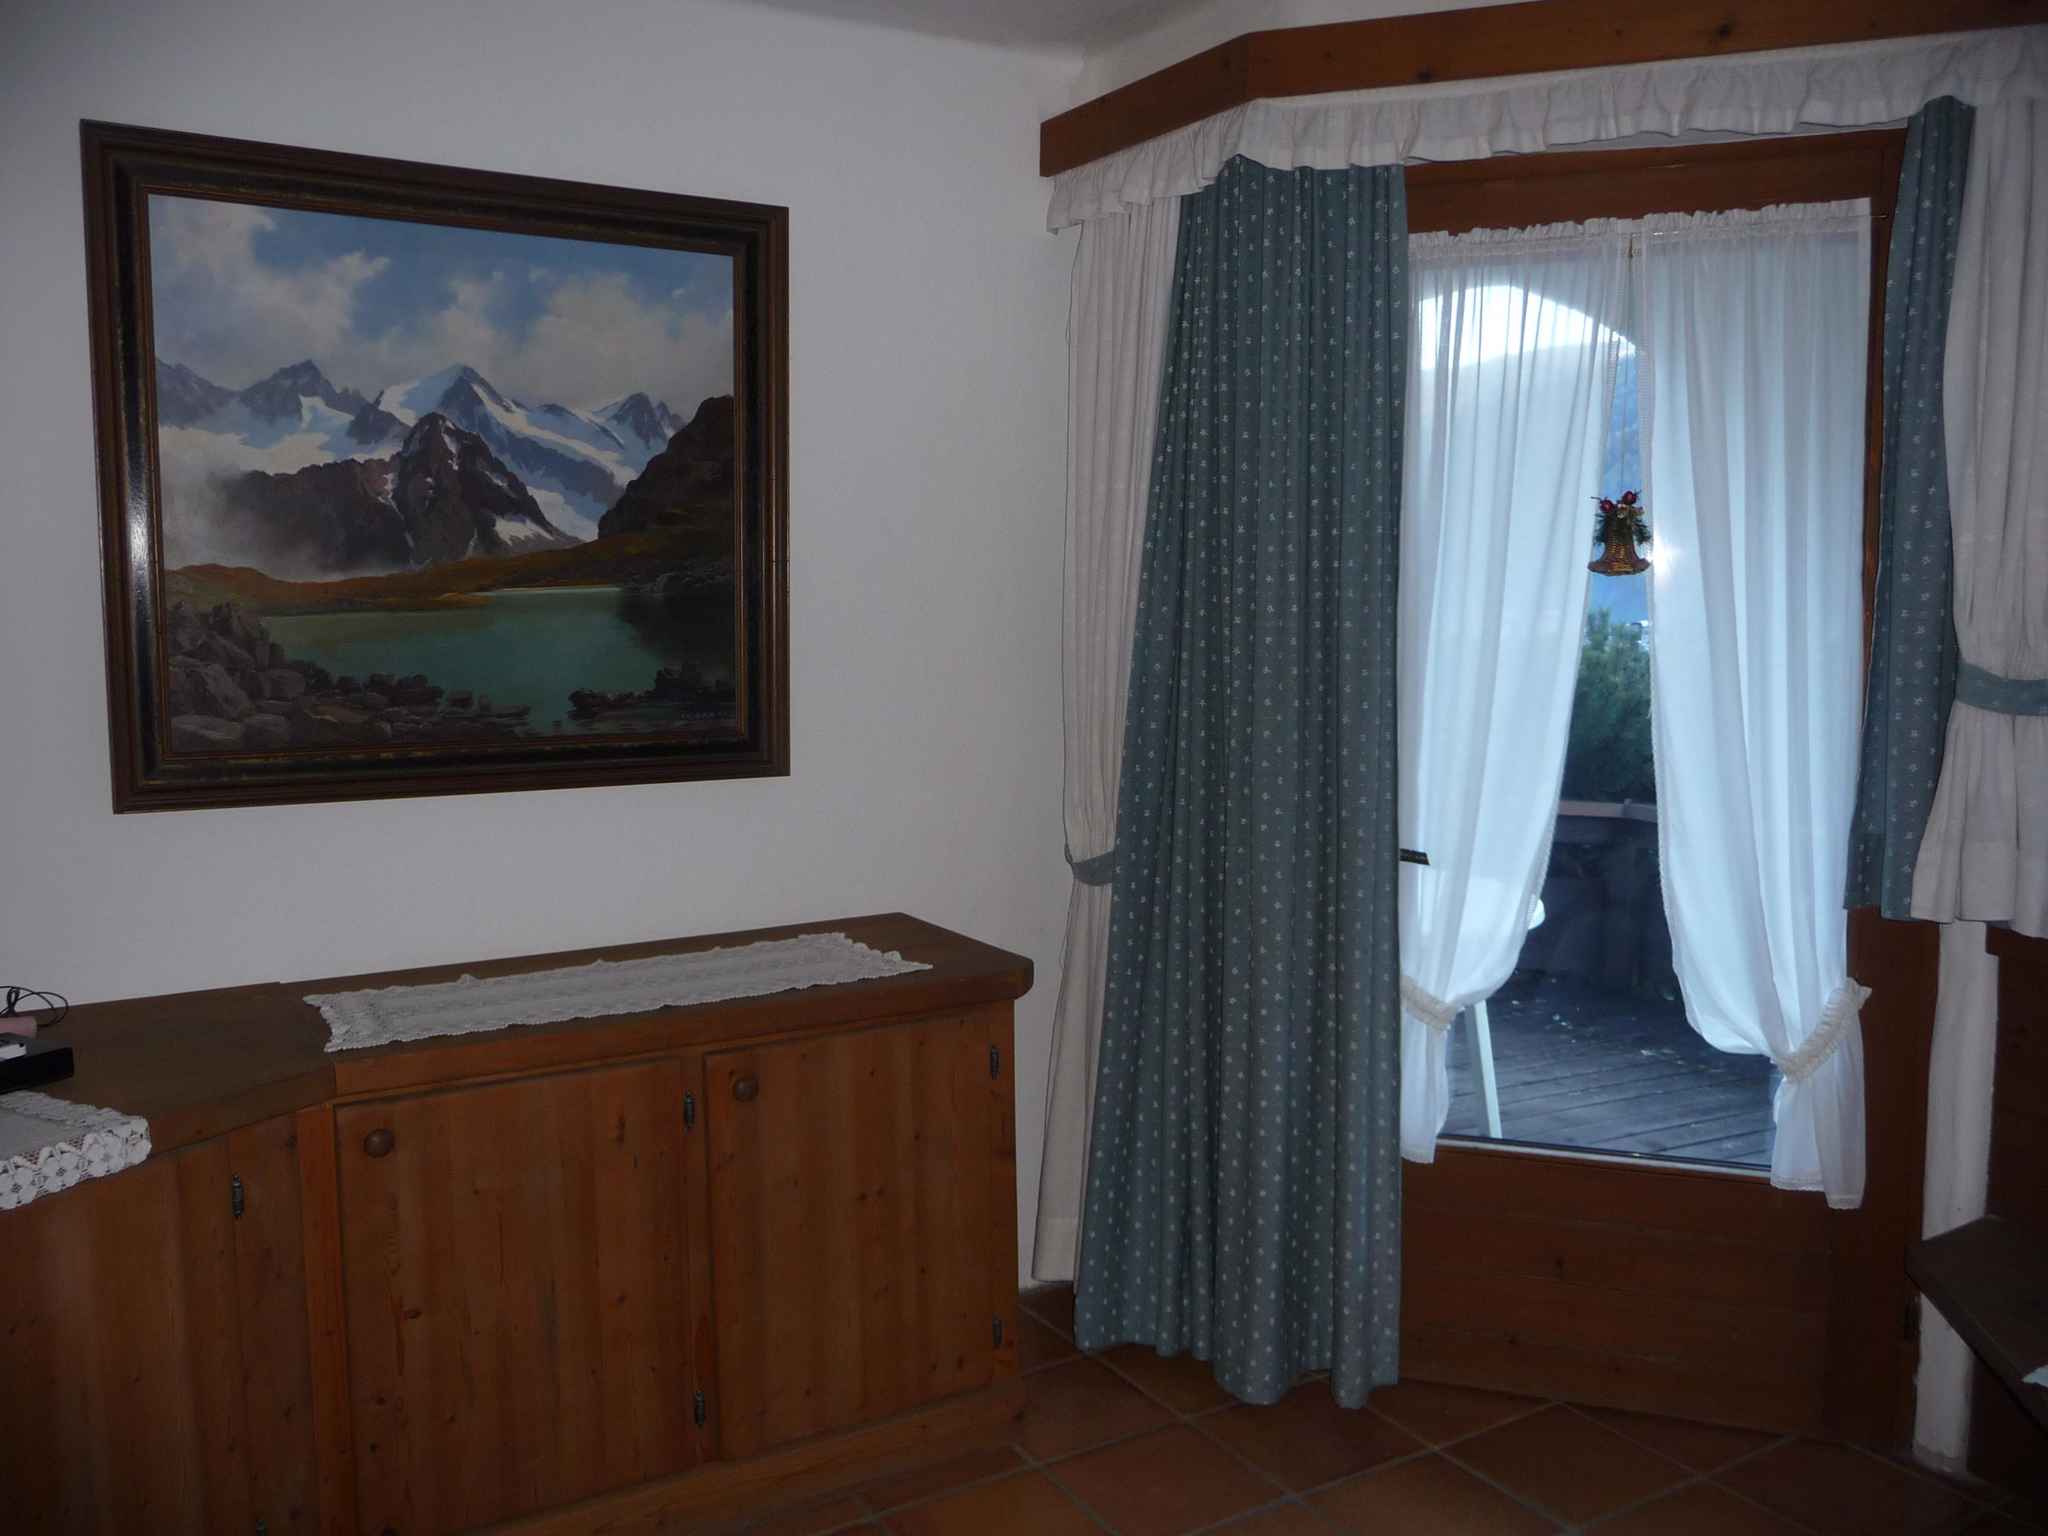 Ferienwohnung in zentraler ruhiger Lage (283751), Fulpmes, Stubaital, Tirol, Österreich, Bild 22